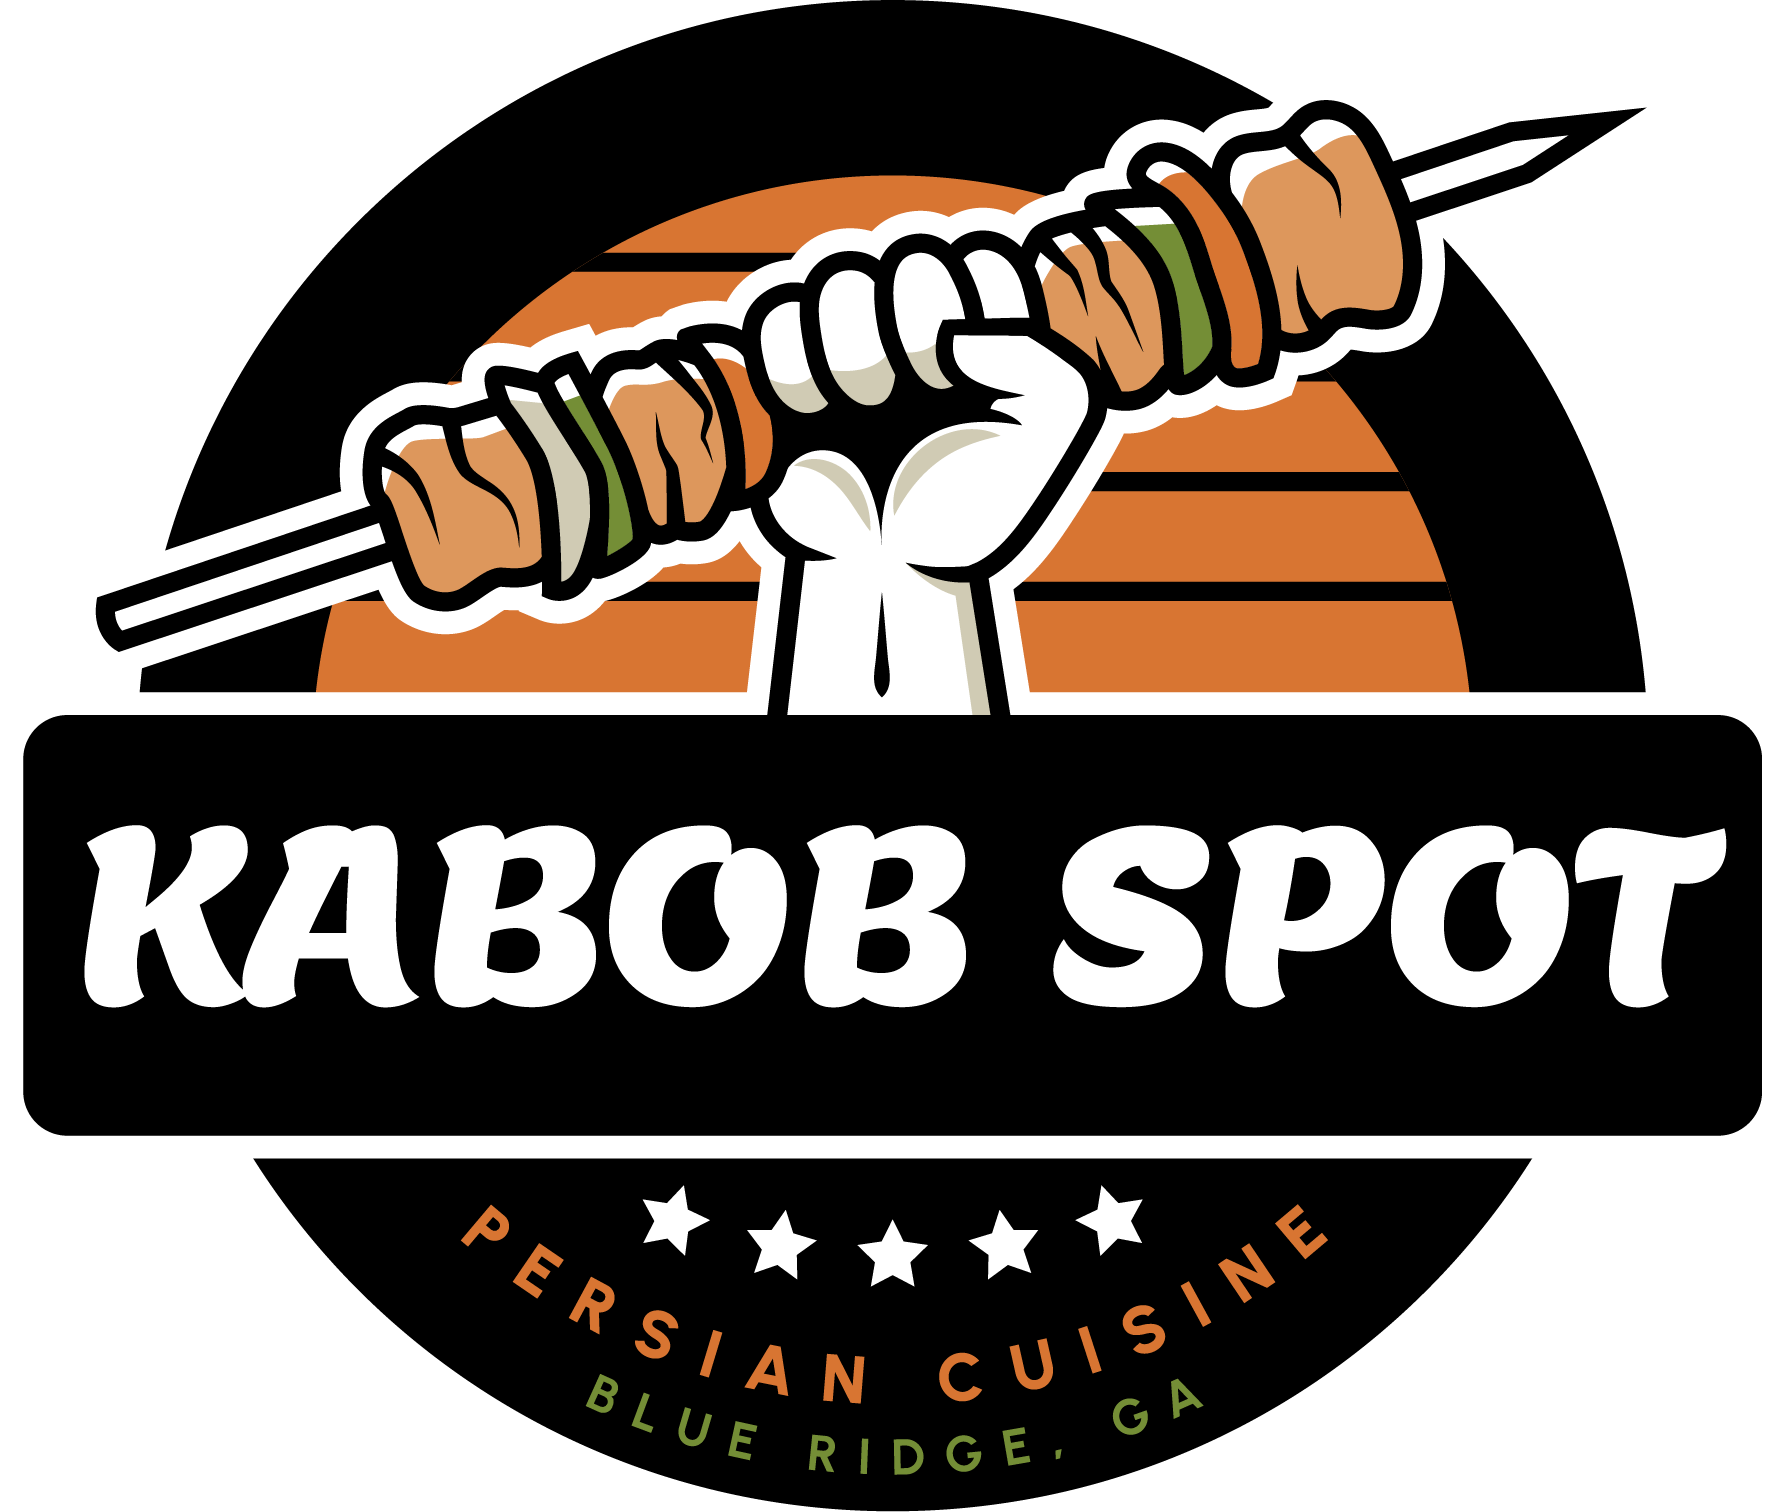 The Kabob Spot 